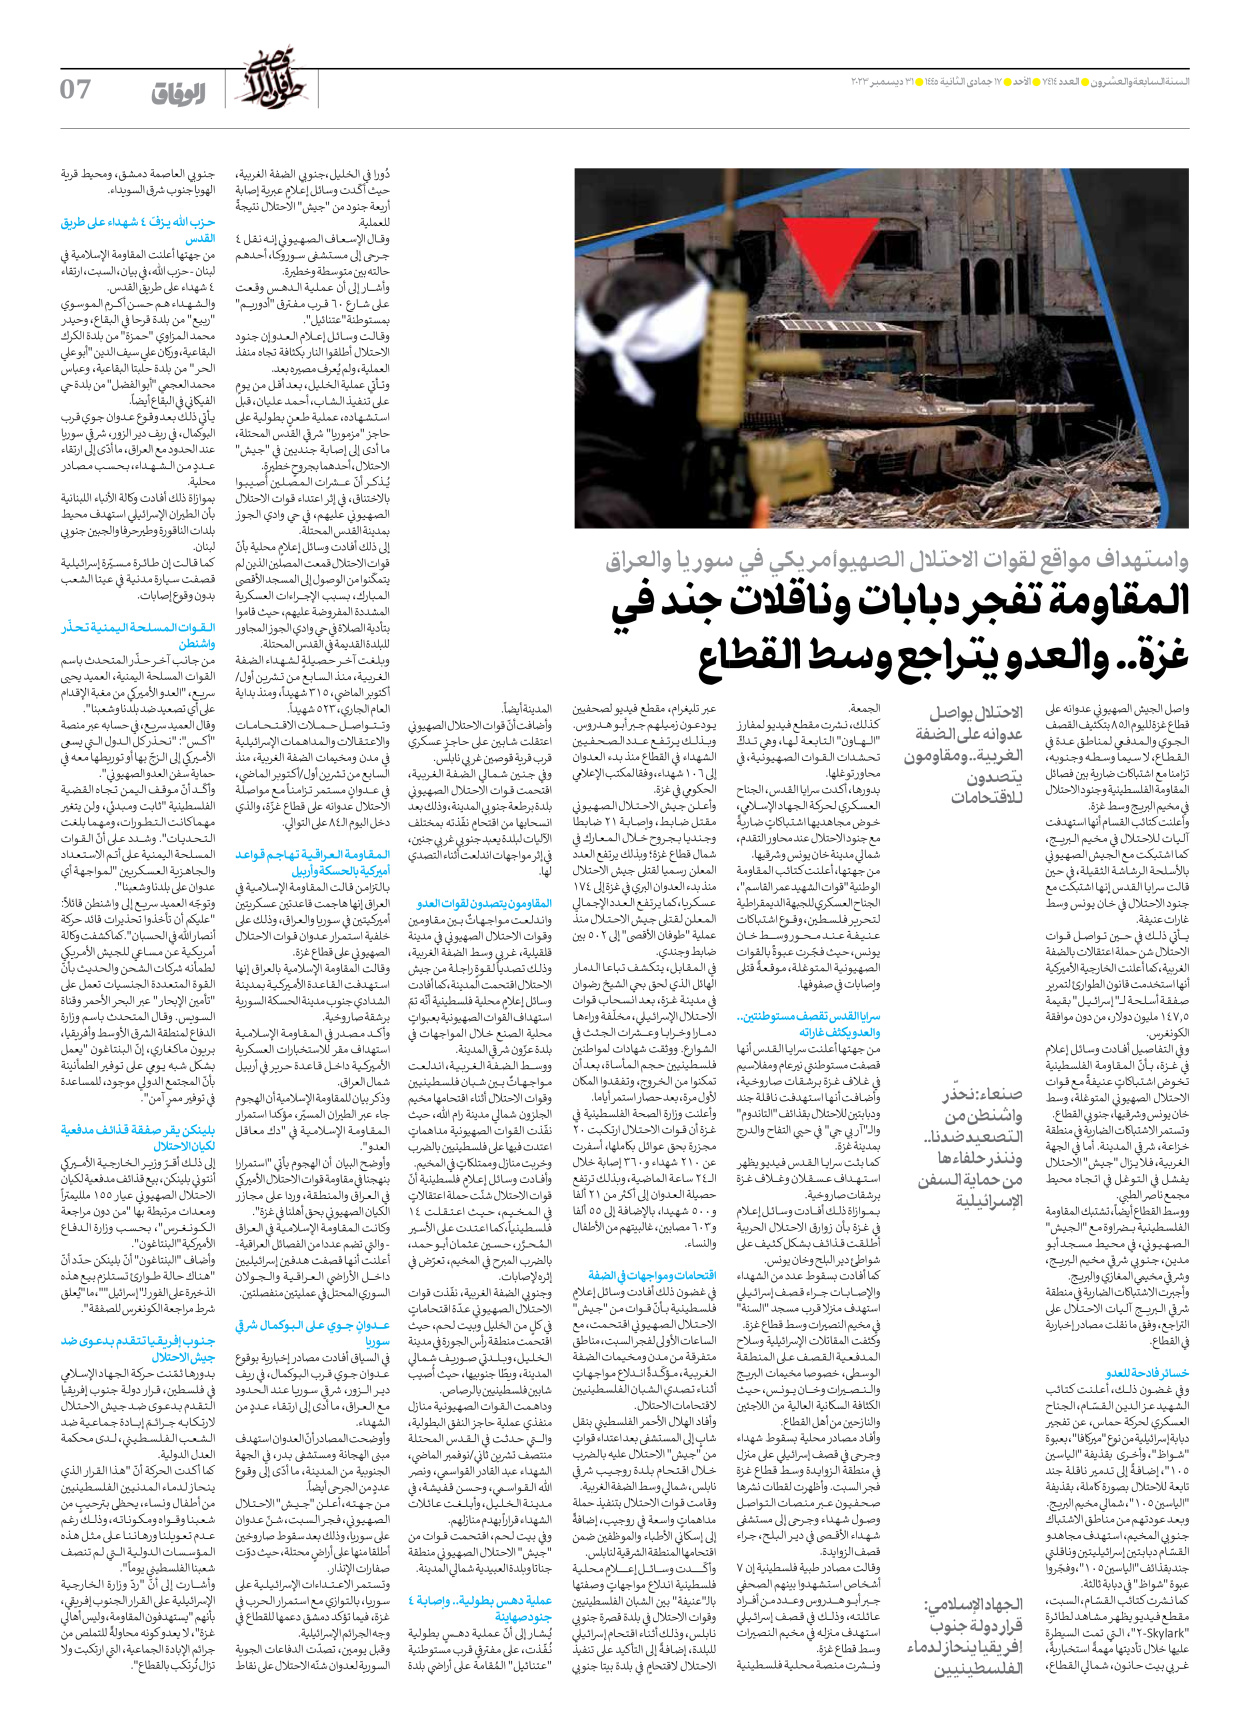 صحیفة ایران الدولیة الوفاق - العدد سبعة آلاف وأربعمائة وأربعة عشر - ٣١ ديسمبر ٢٠٢٣ - الصفحة ۷